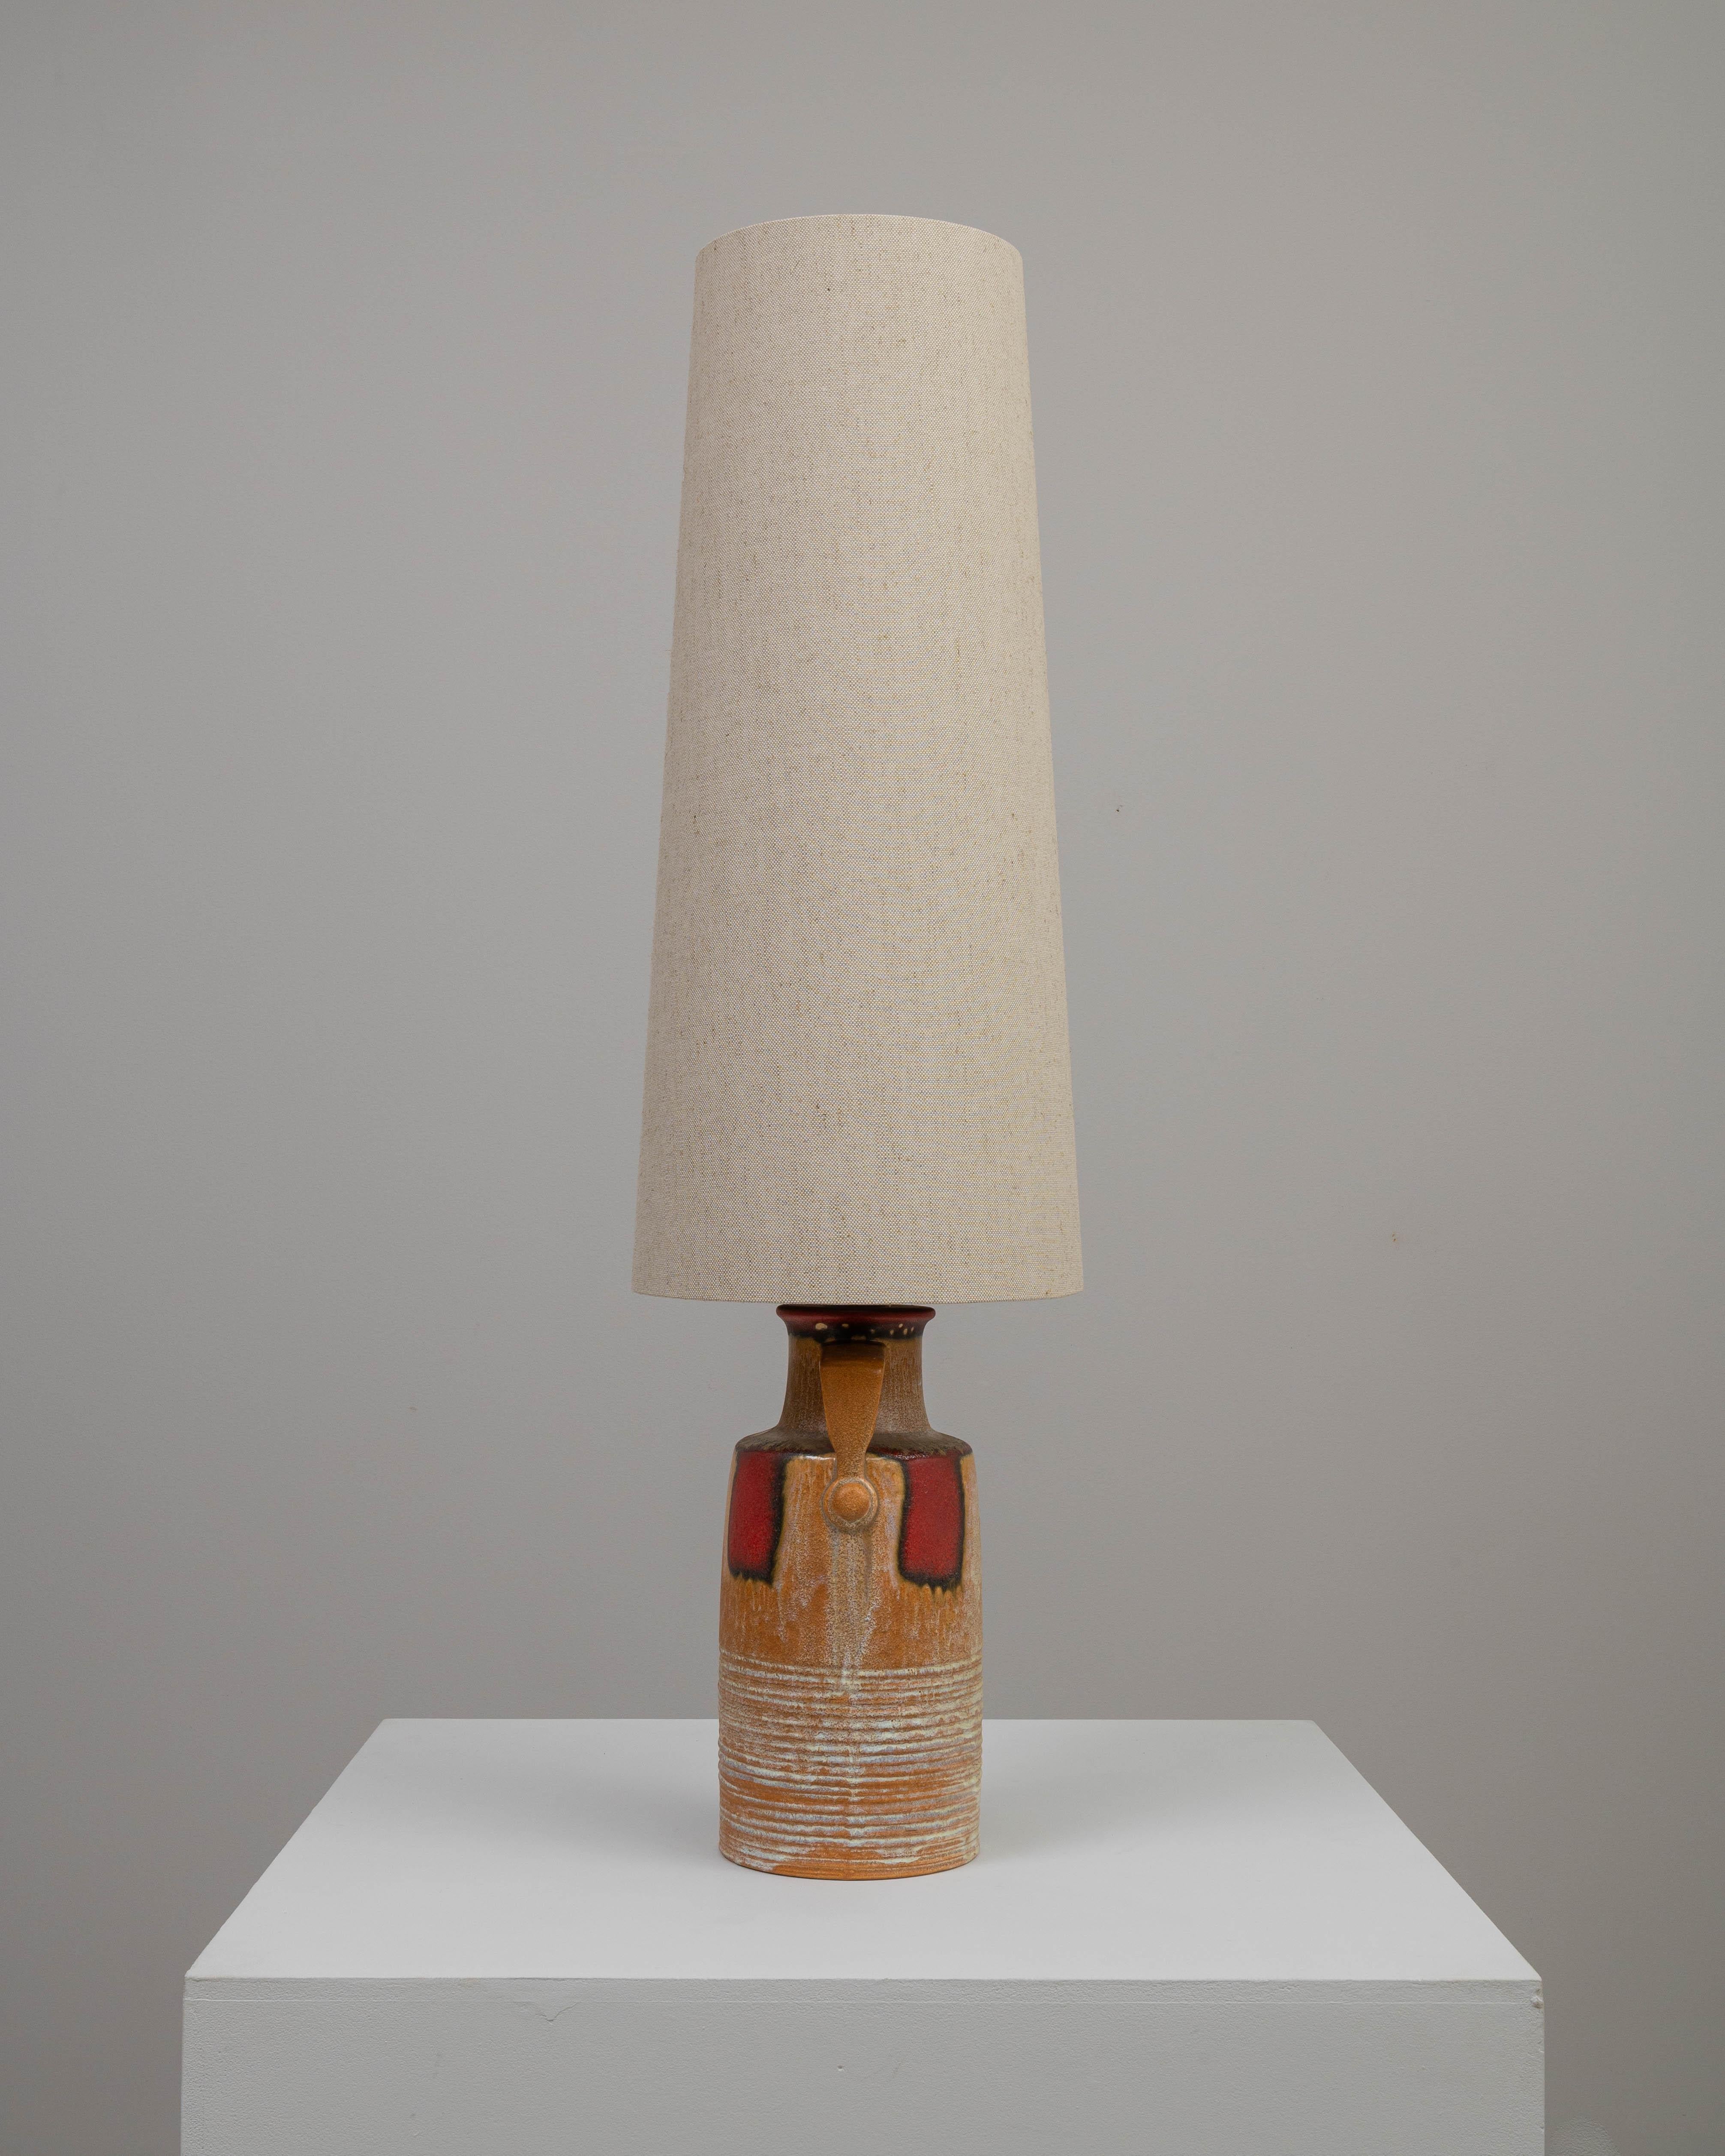 Cette lampe à poser en céramique allemande du XXe siècle est un mélange distinctif d'esthétique rustique et de design du milieu du siècle. La base robuste, en forme de cruche, a un attrait terreux avec ses stries horizontales texturées et une